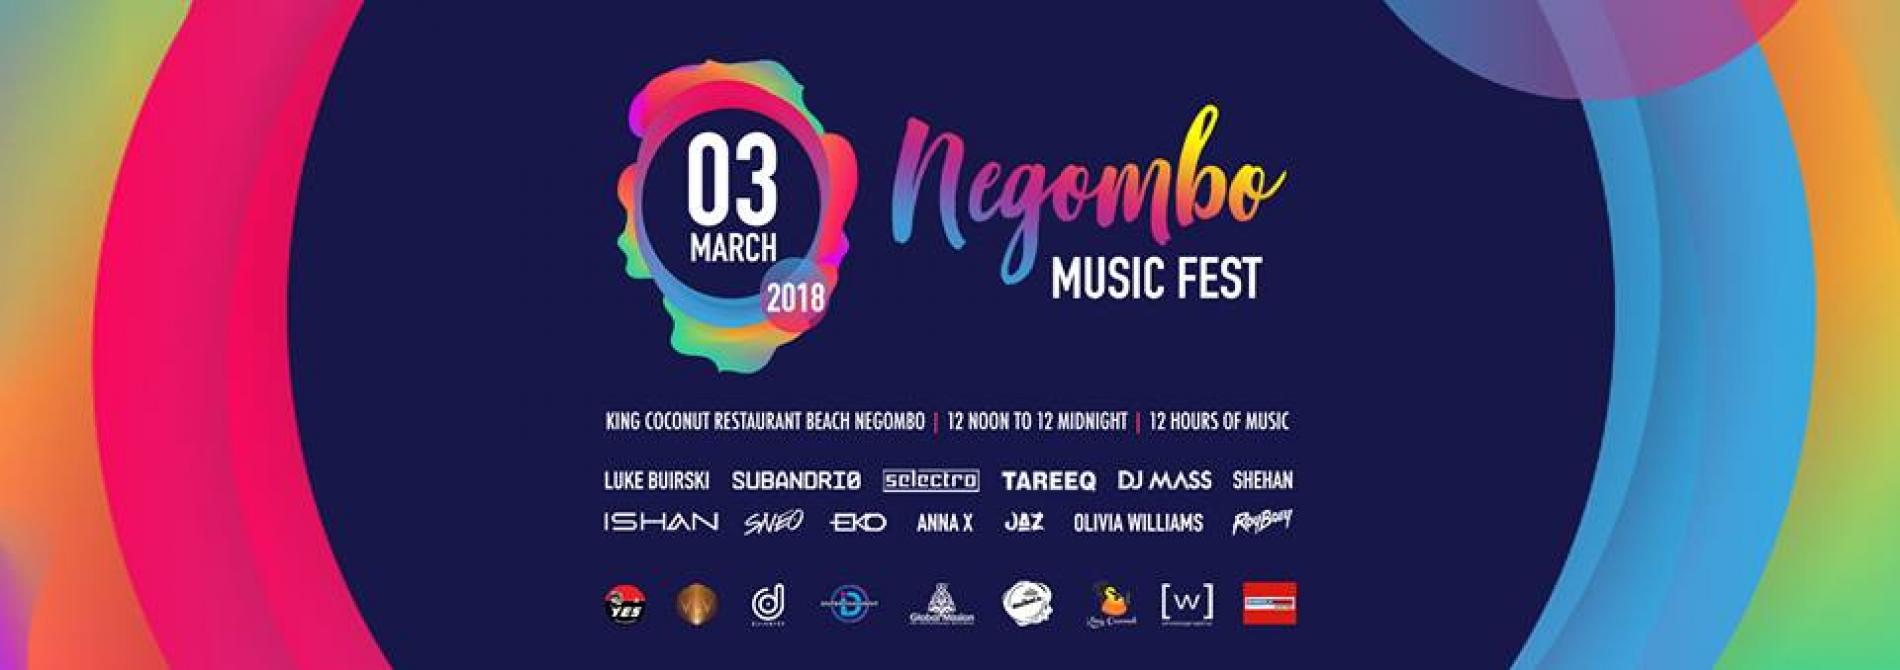 Negombo Music Fest